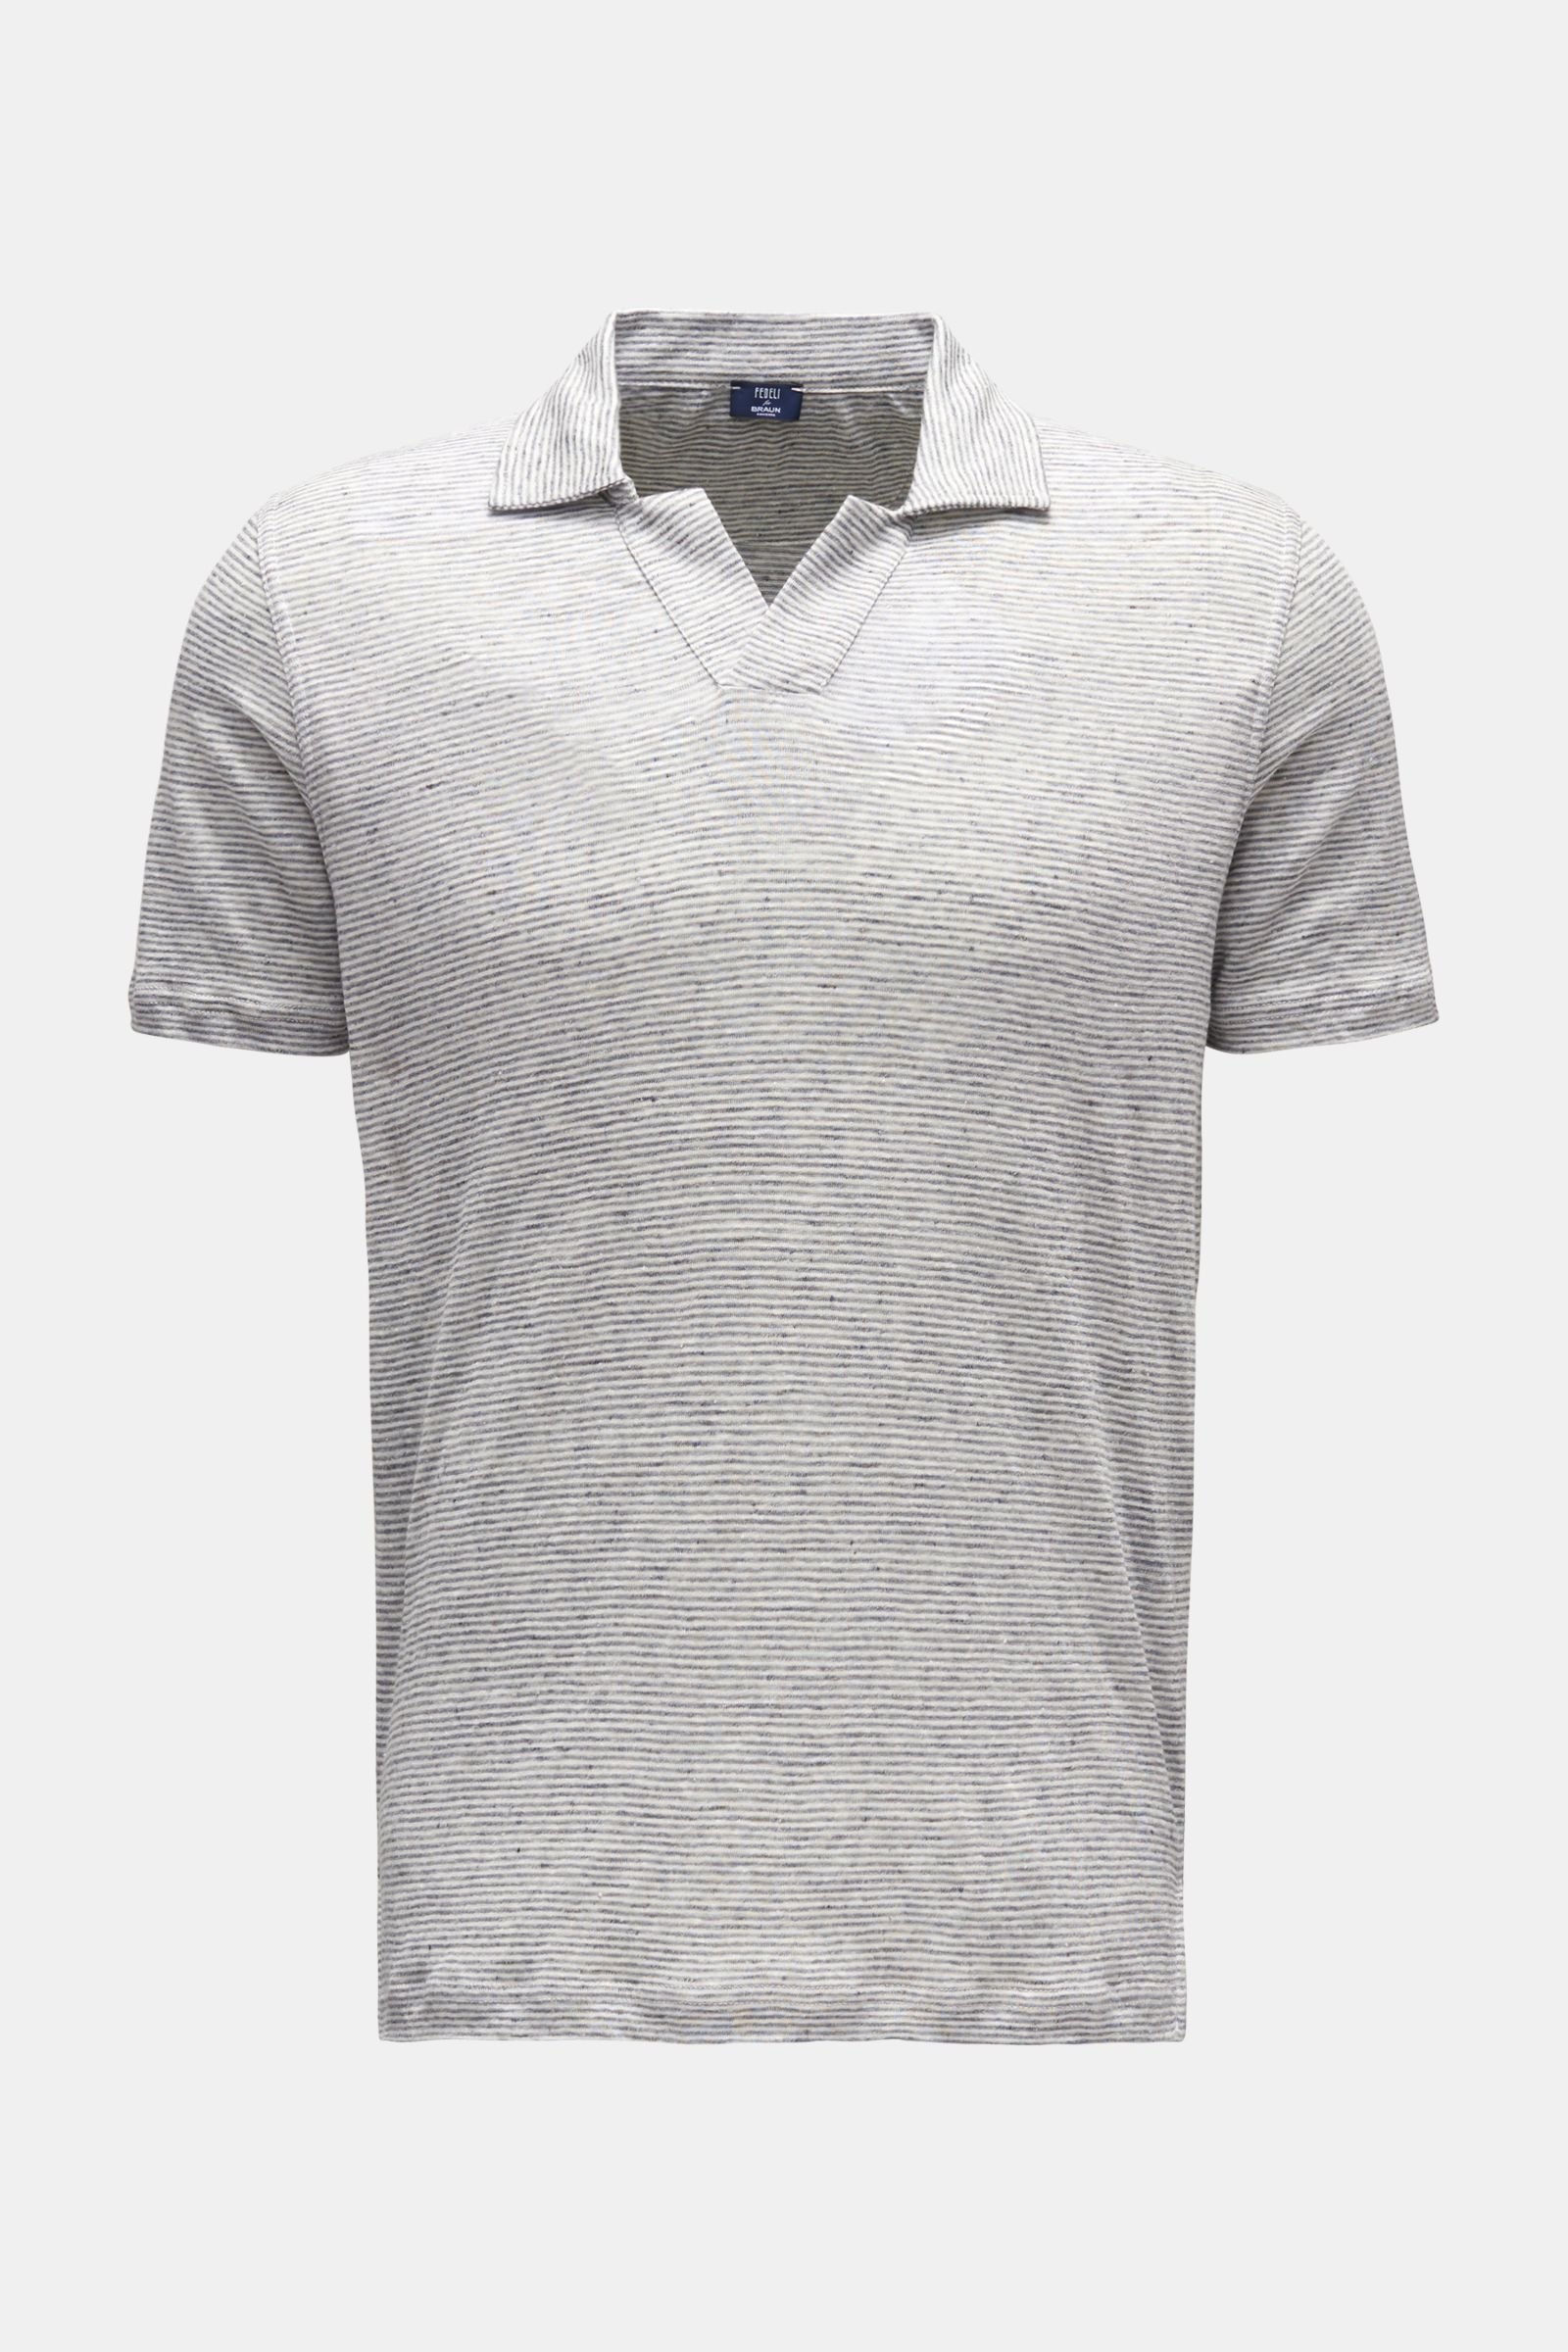 Leinen-Poloshirt 'Franky' grau/weiß gestreift